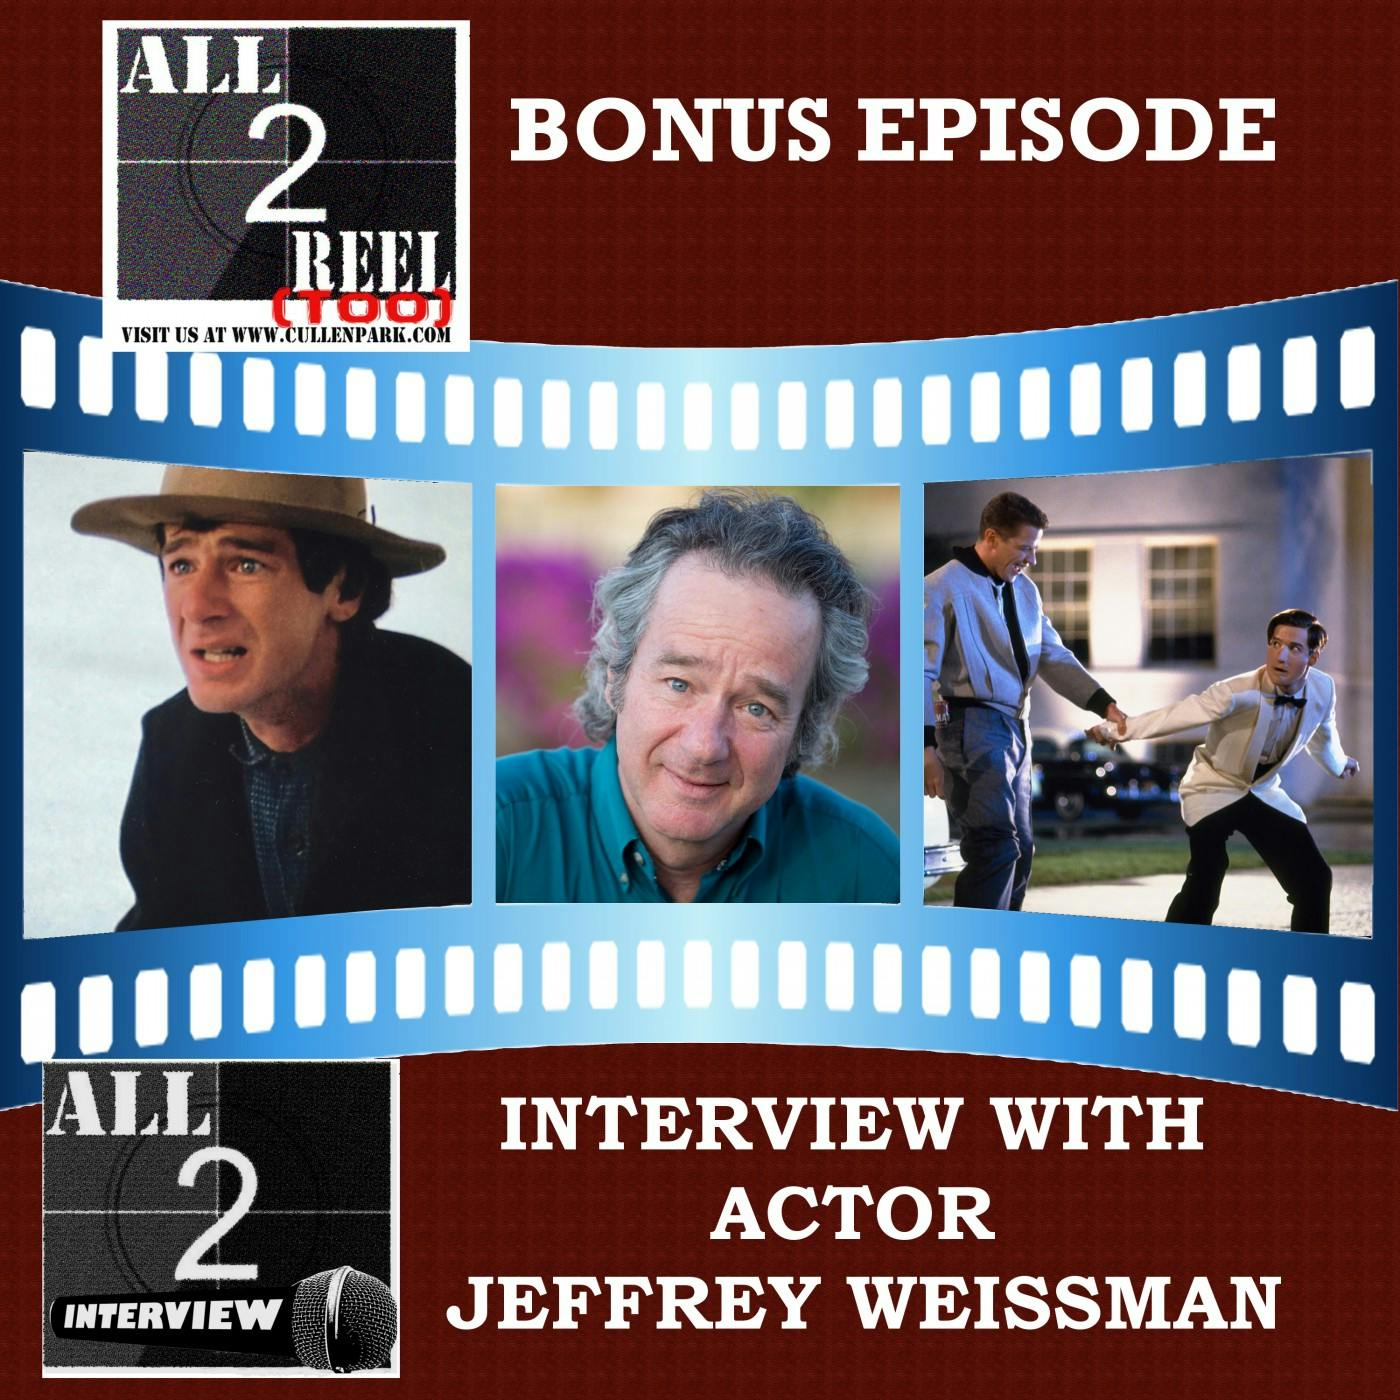 JEFFREY WEISSMAN INTERVIEW